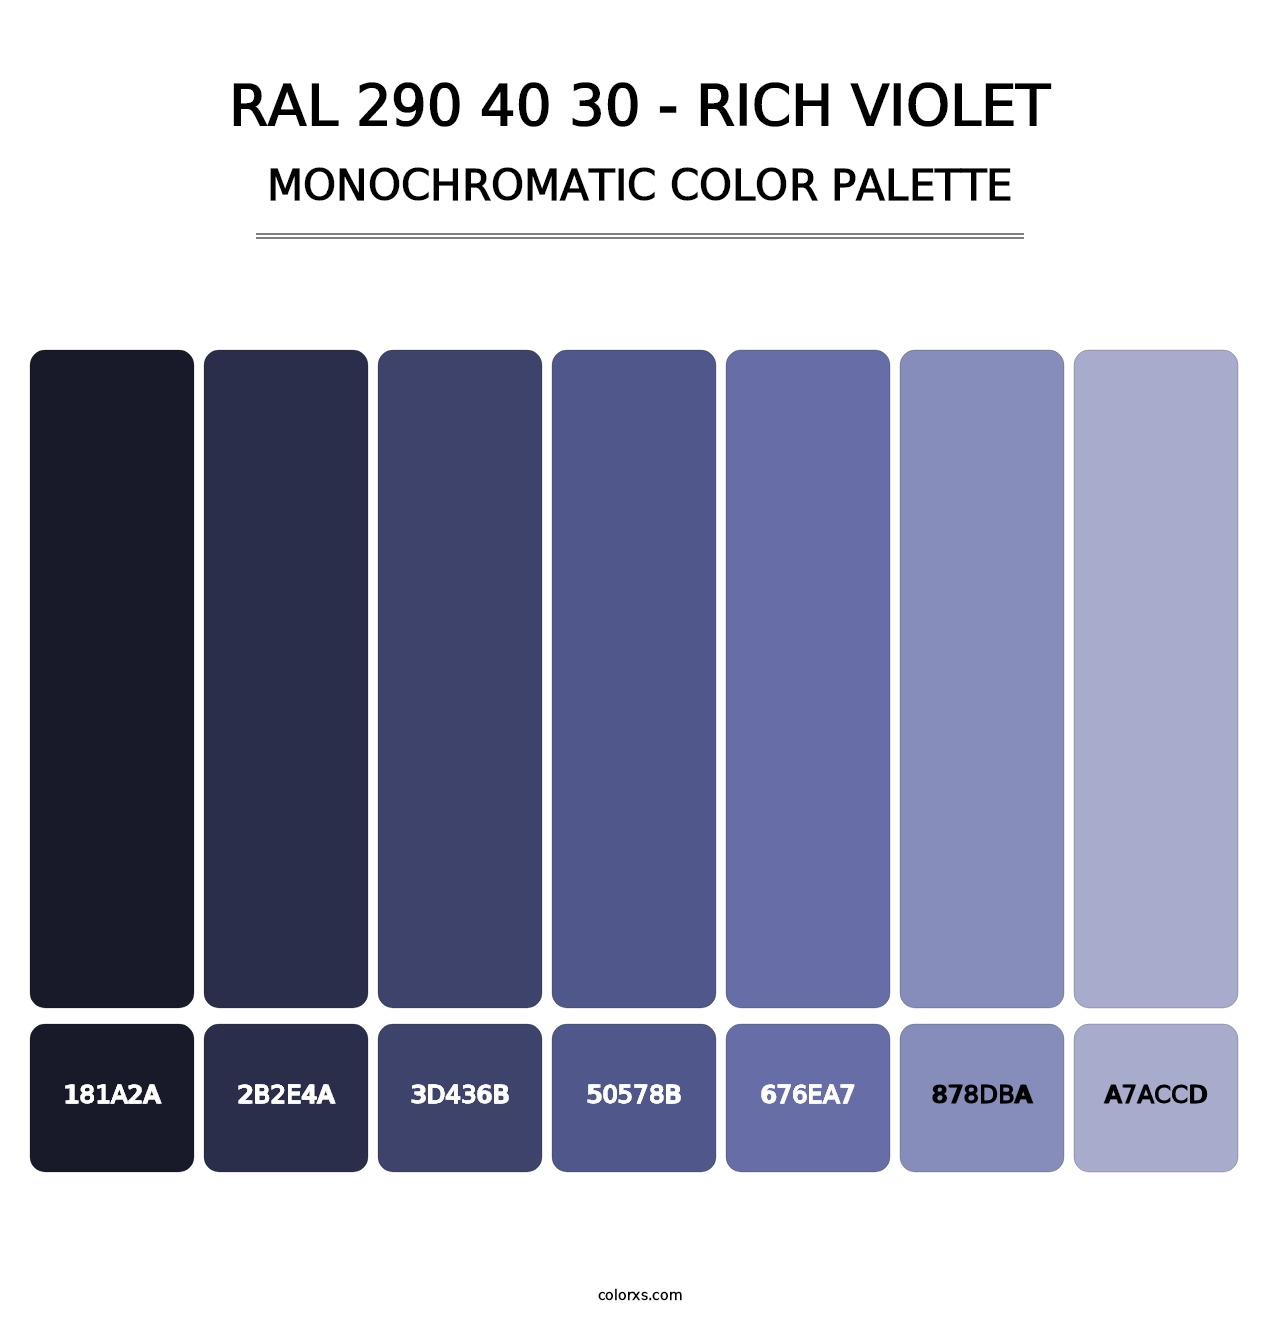 RAL 290 40 30 - Rich Violet - Monochromatic Color Palette